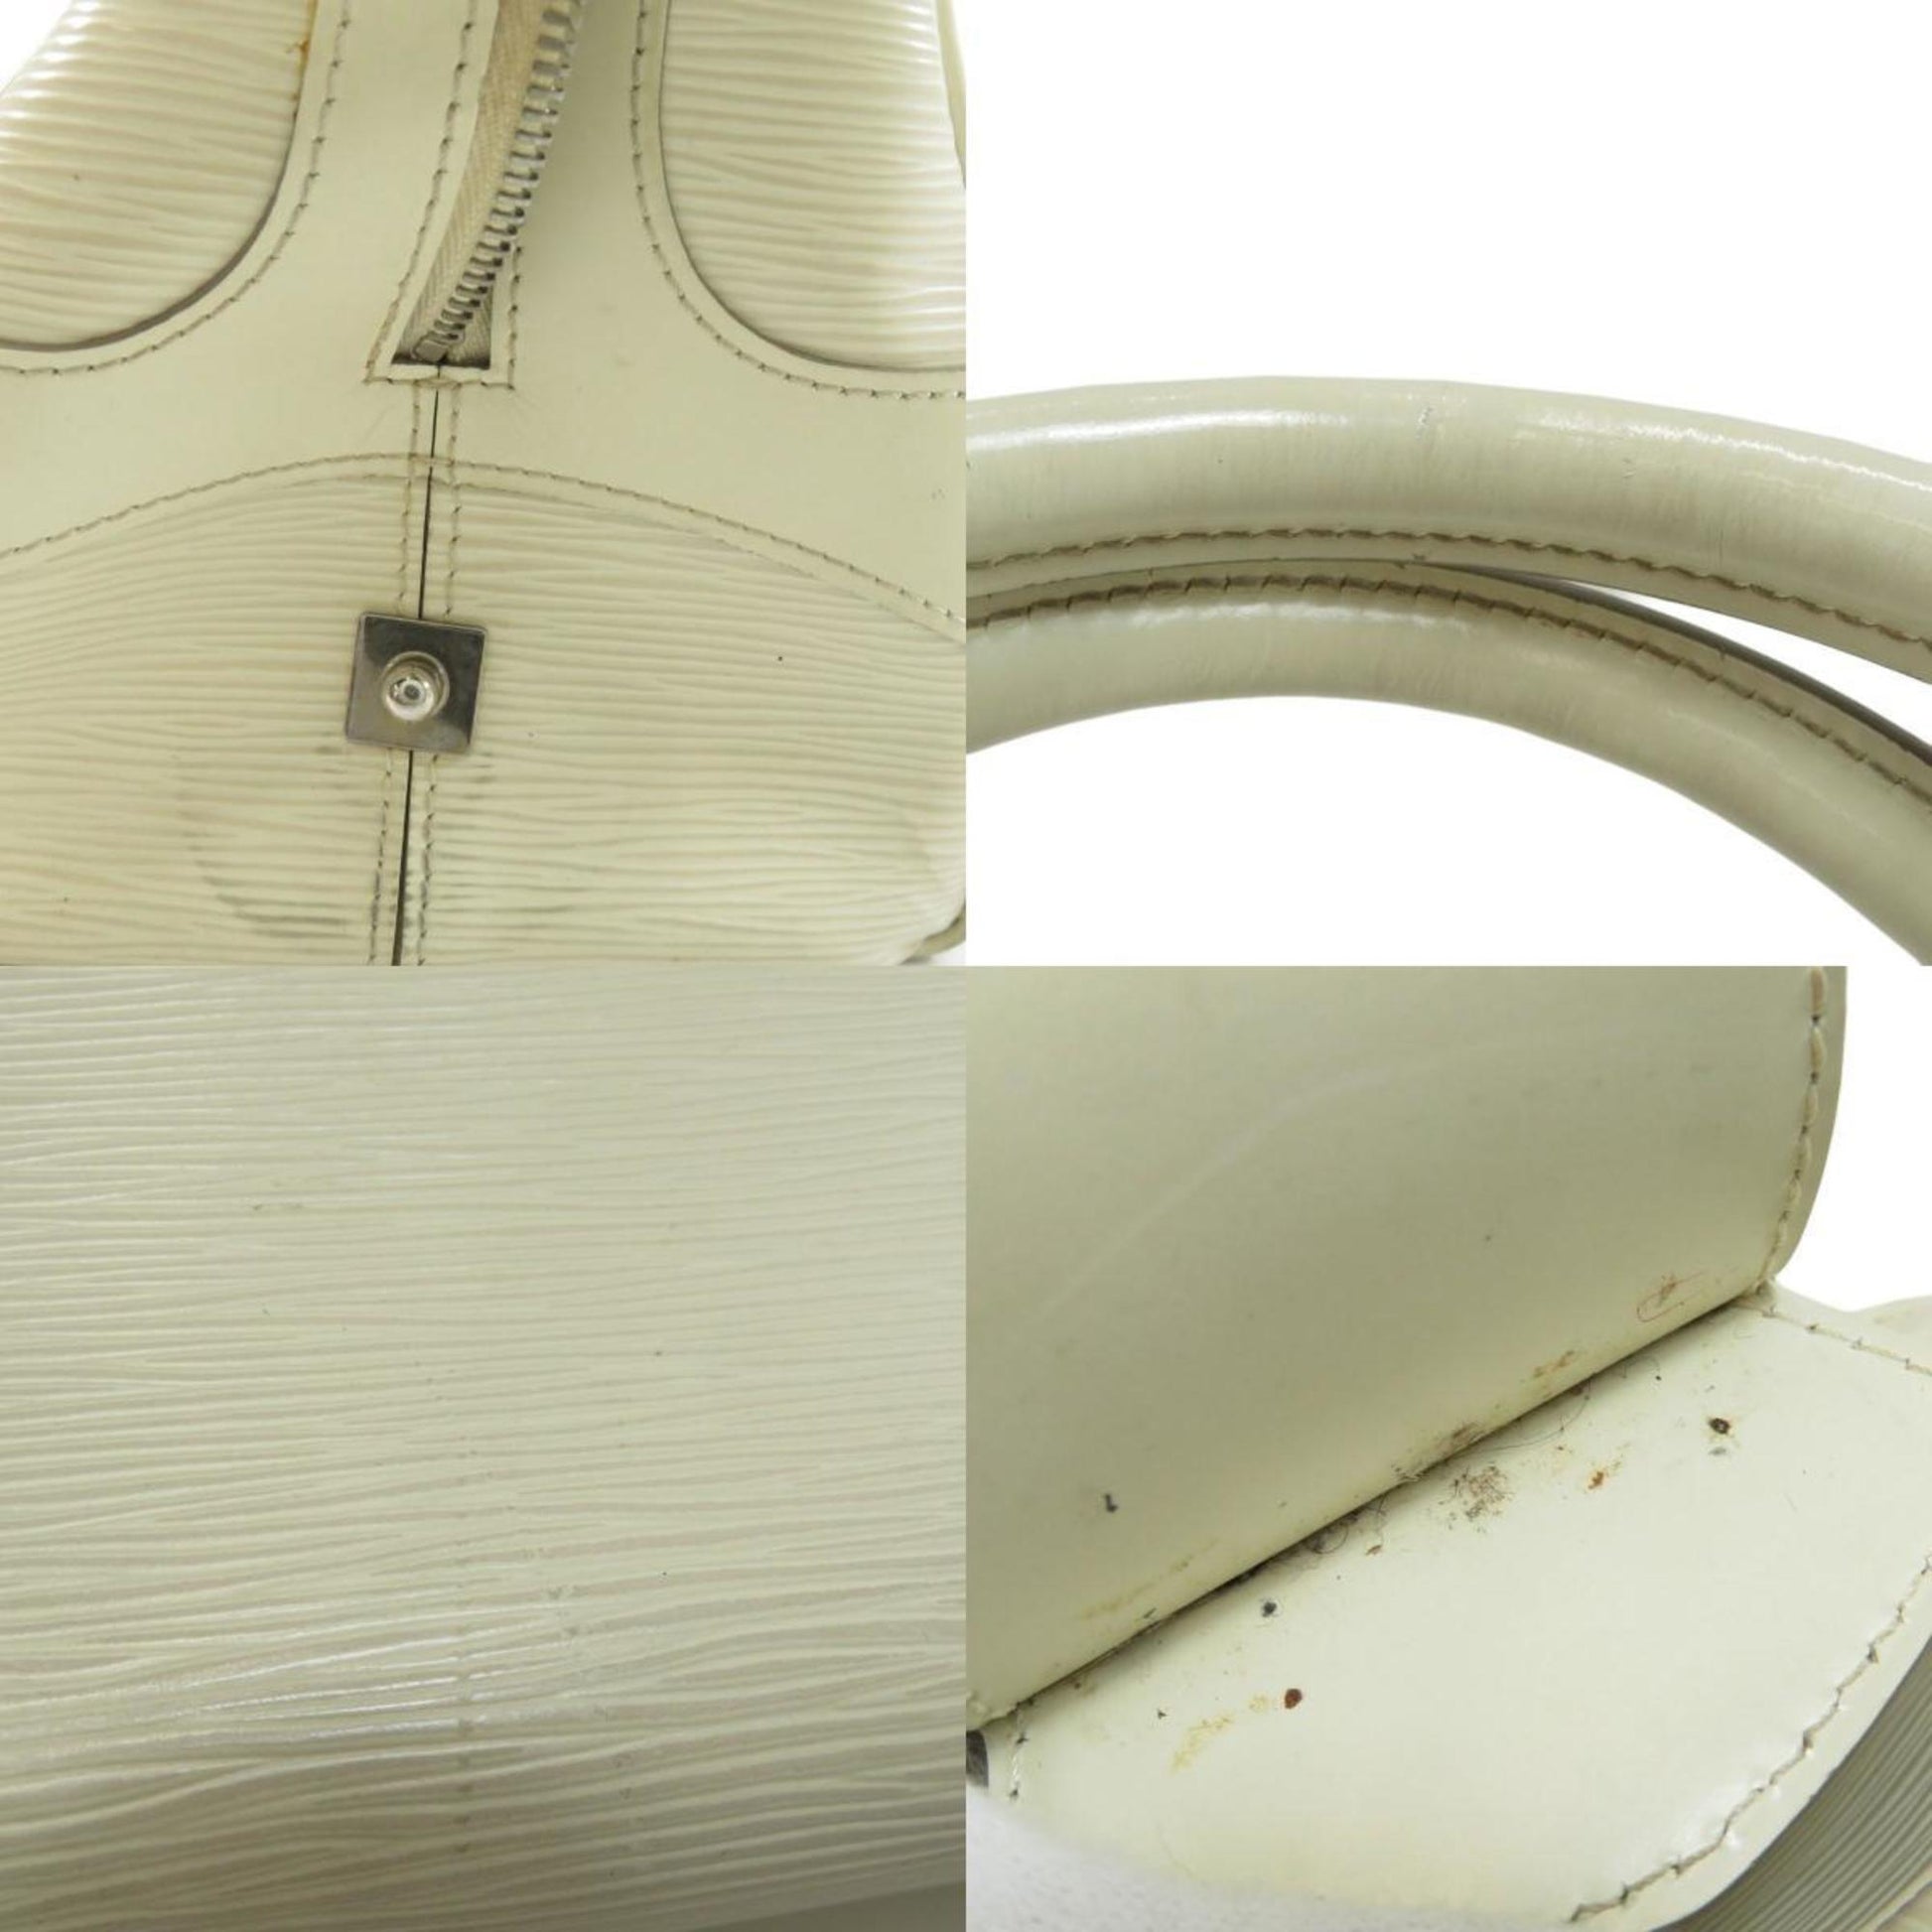 Authentic Louis Vuitton Handbag M6932J Rpi Leather Bowling